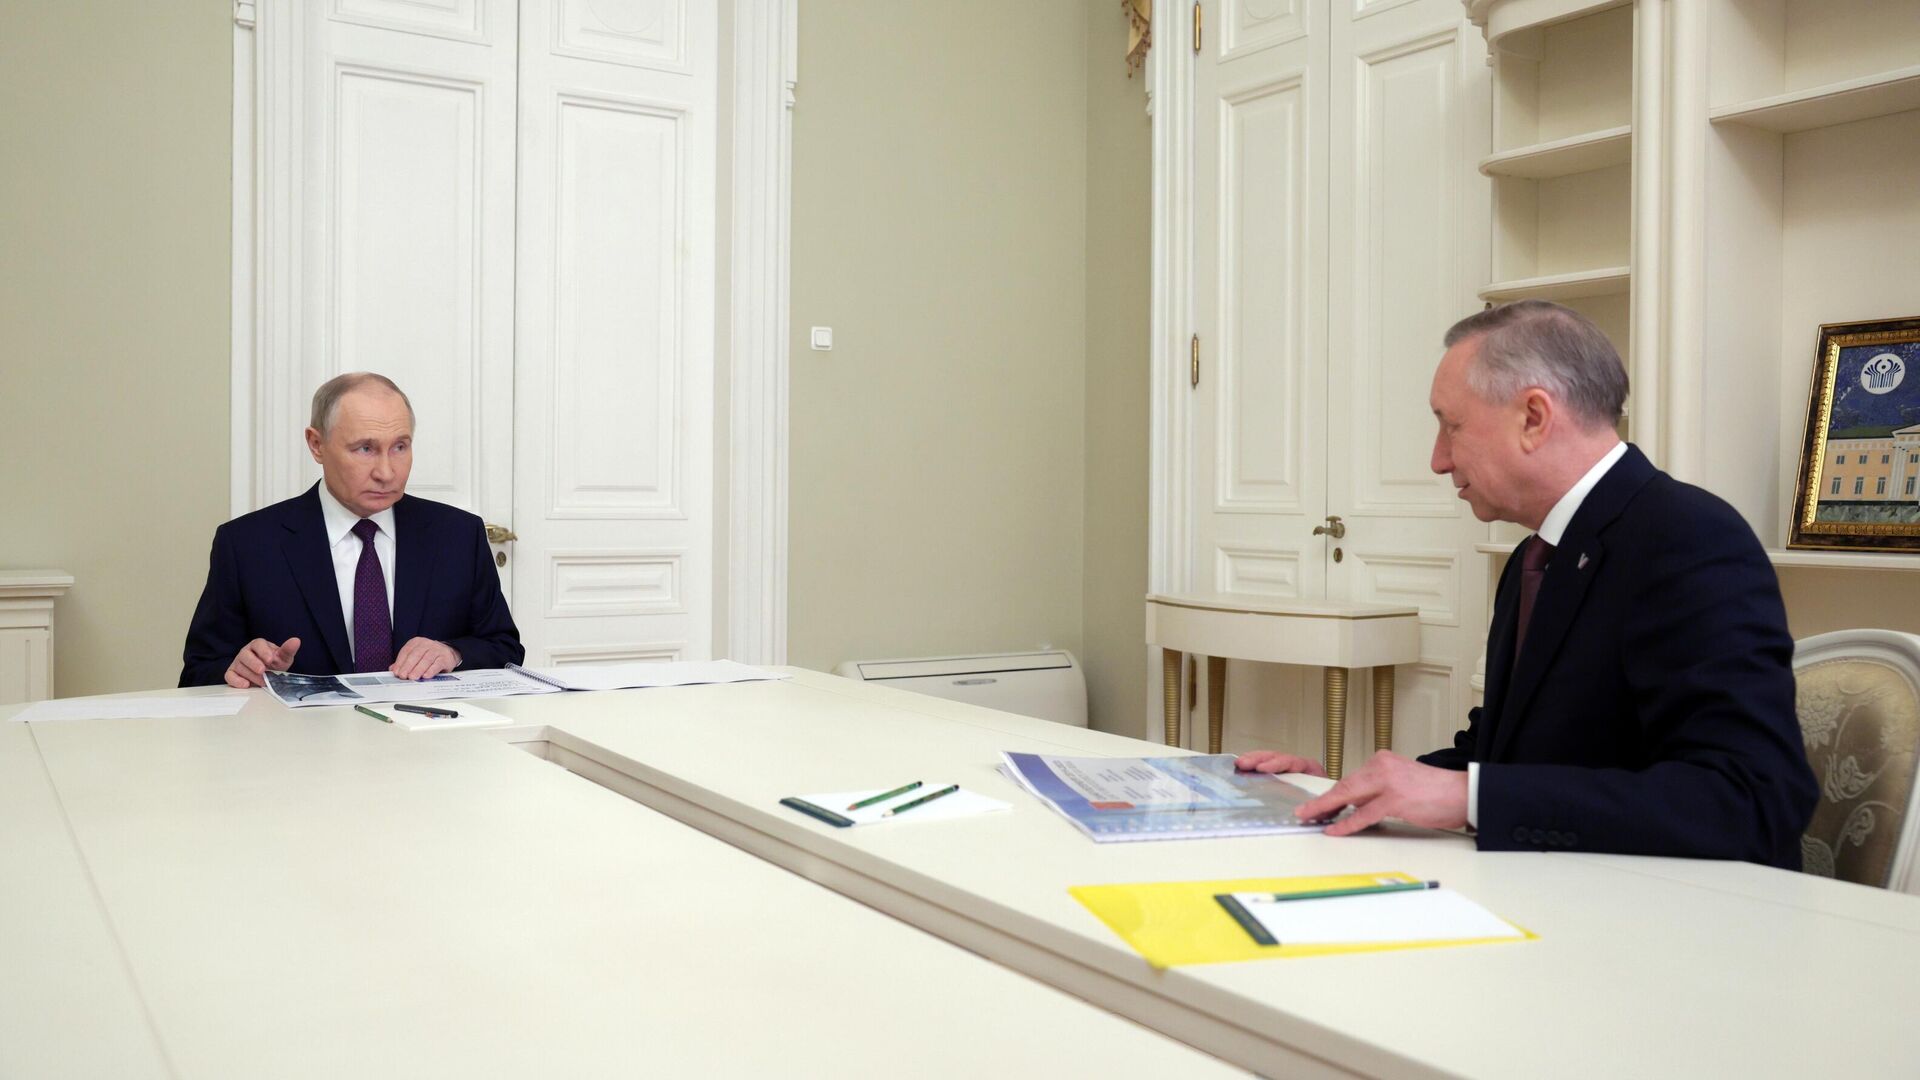 Беглов сообщил, что Путин поддержал его на предстоящих выборах губернатора